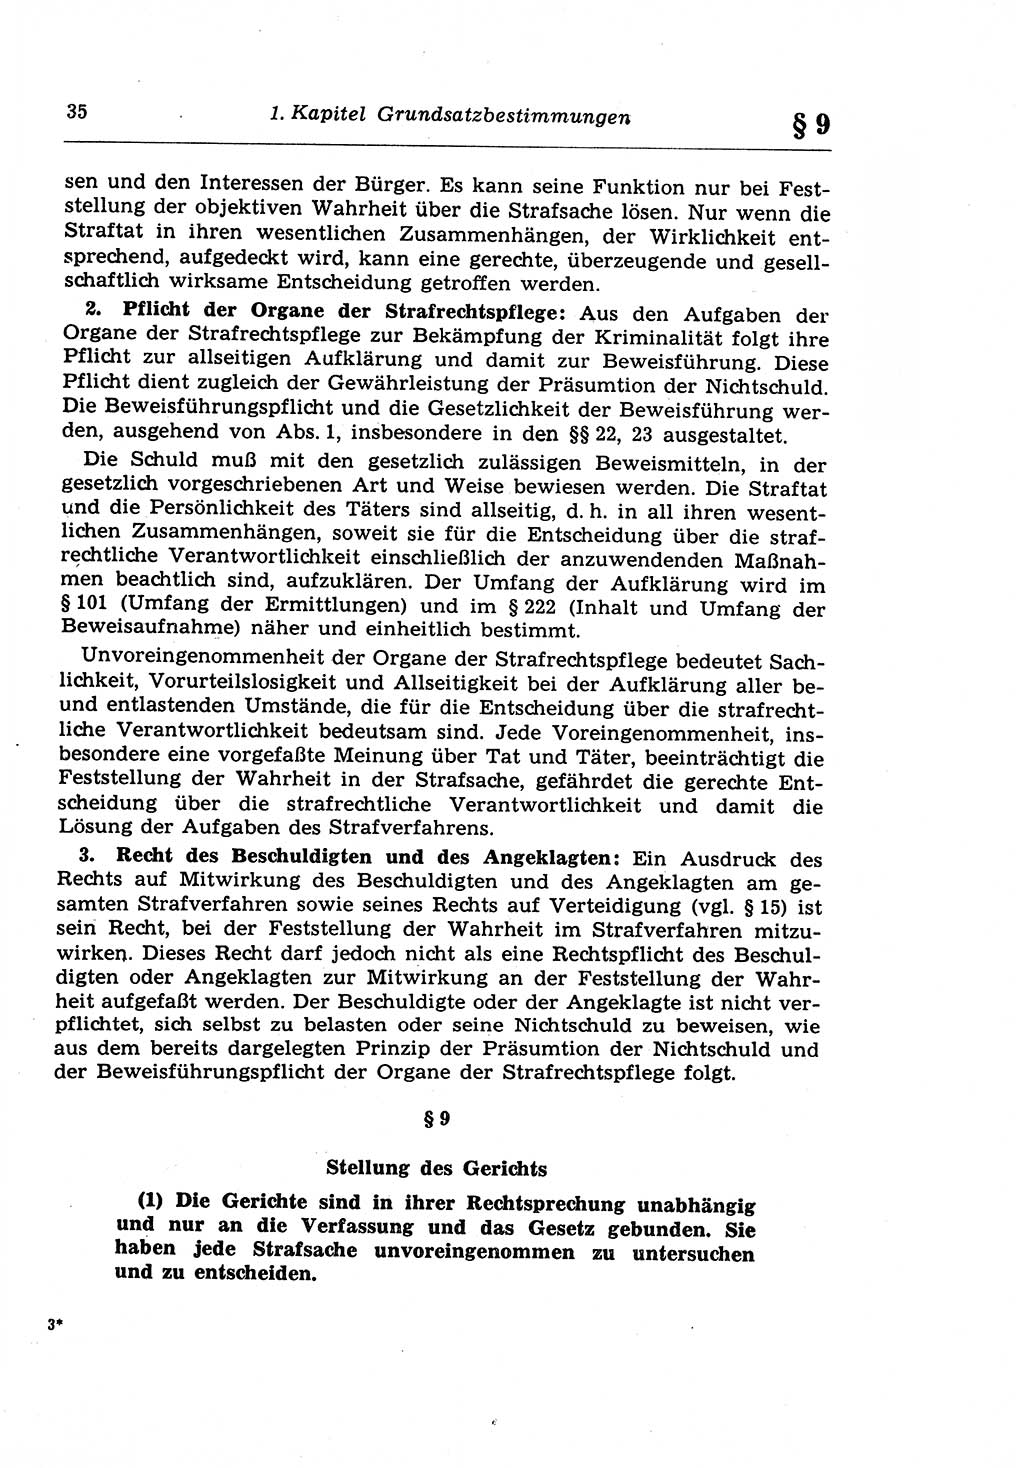 Strafprozeßrecht der DDR (Deutsche Demokratische Republik), Lehrkommentar zur Strafprozeßordnung (StPO) 1968, Seite 35 (Strafprozeßr. DDR Lehrkomm. StPO 19688, S. 35)